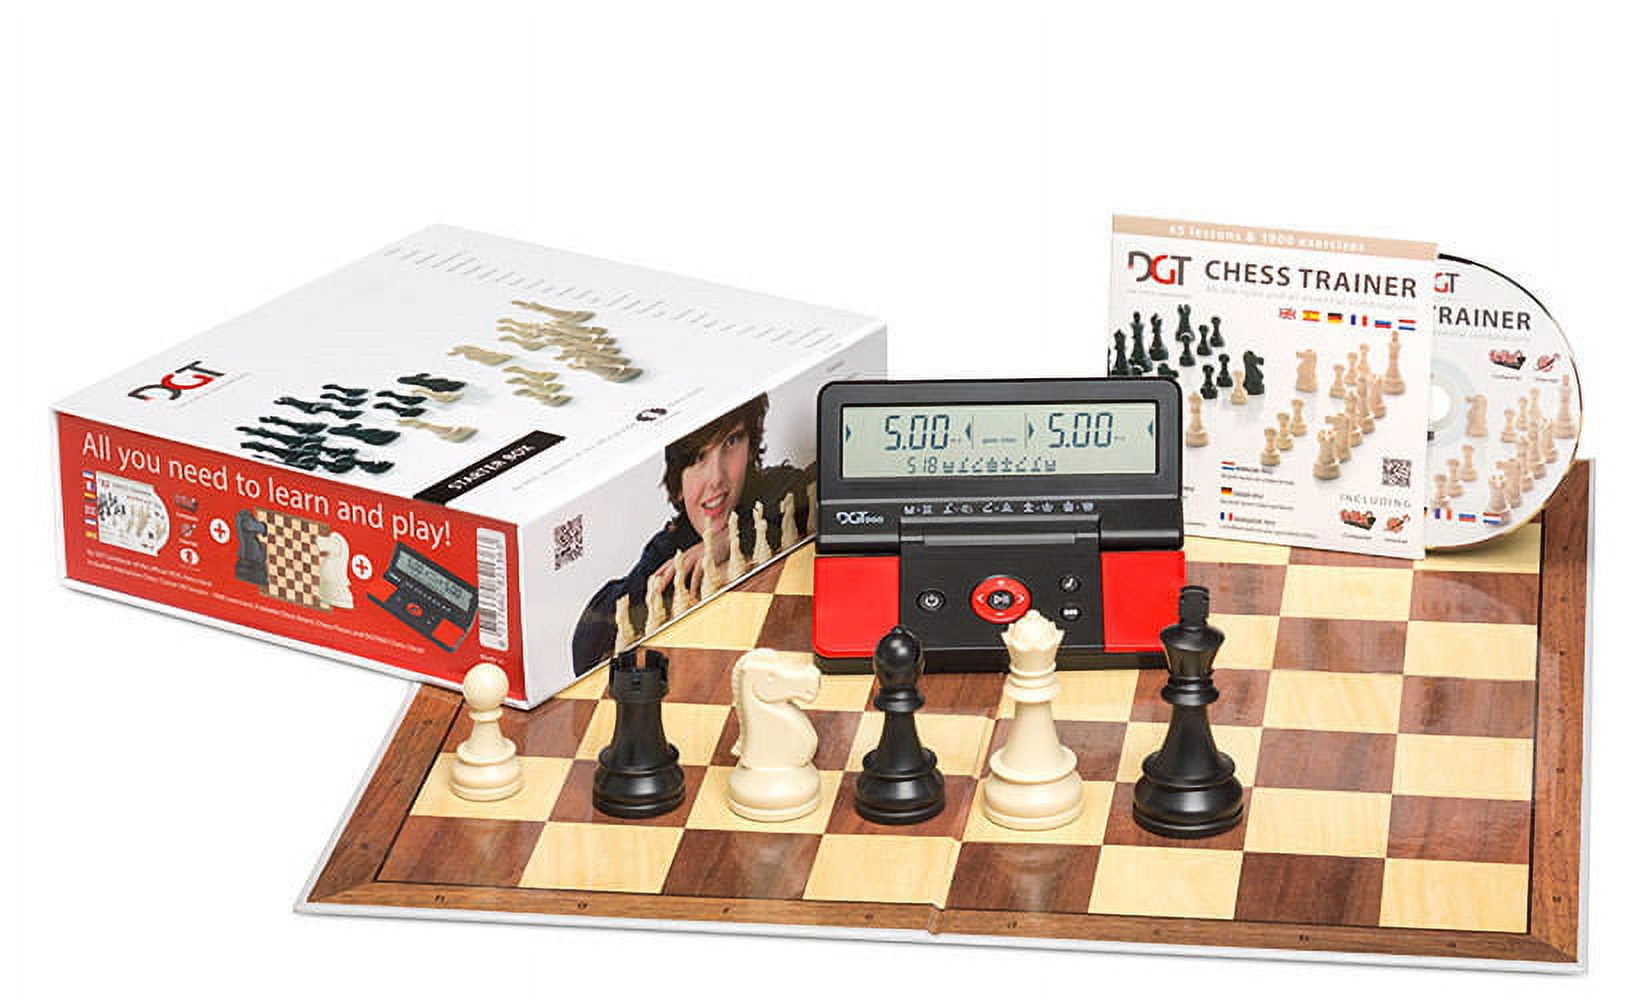 Kit jogo DGT + bolsa delux + tabuleiro mouse pad + relógio chess